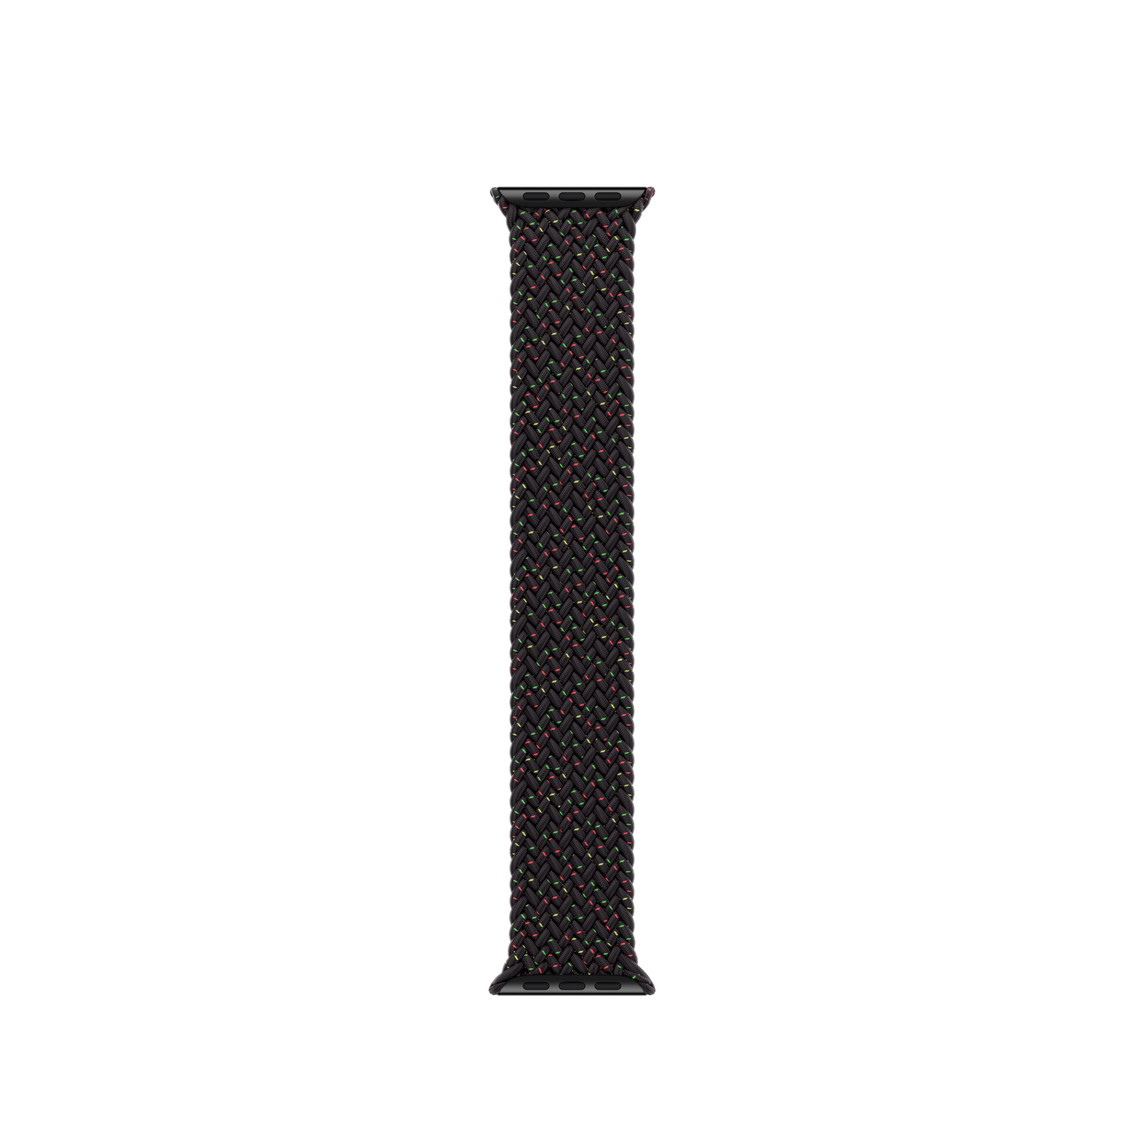 Geflochtene Solo Loop Armband Black Unity, mit roten und grünen Sprenkeln akzentuiert, gewebte Polyester- und Silikonfäden ohne Schnallen oder Schließen